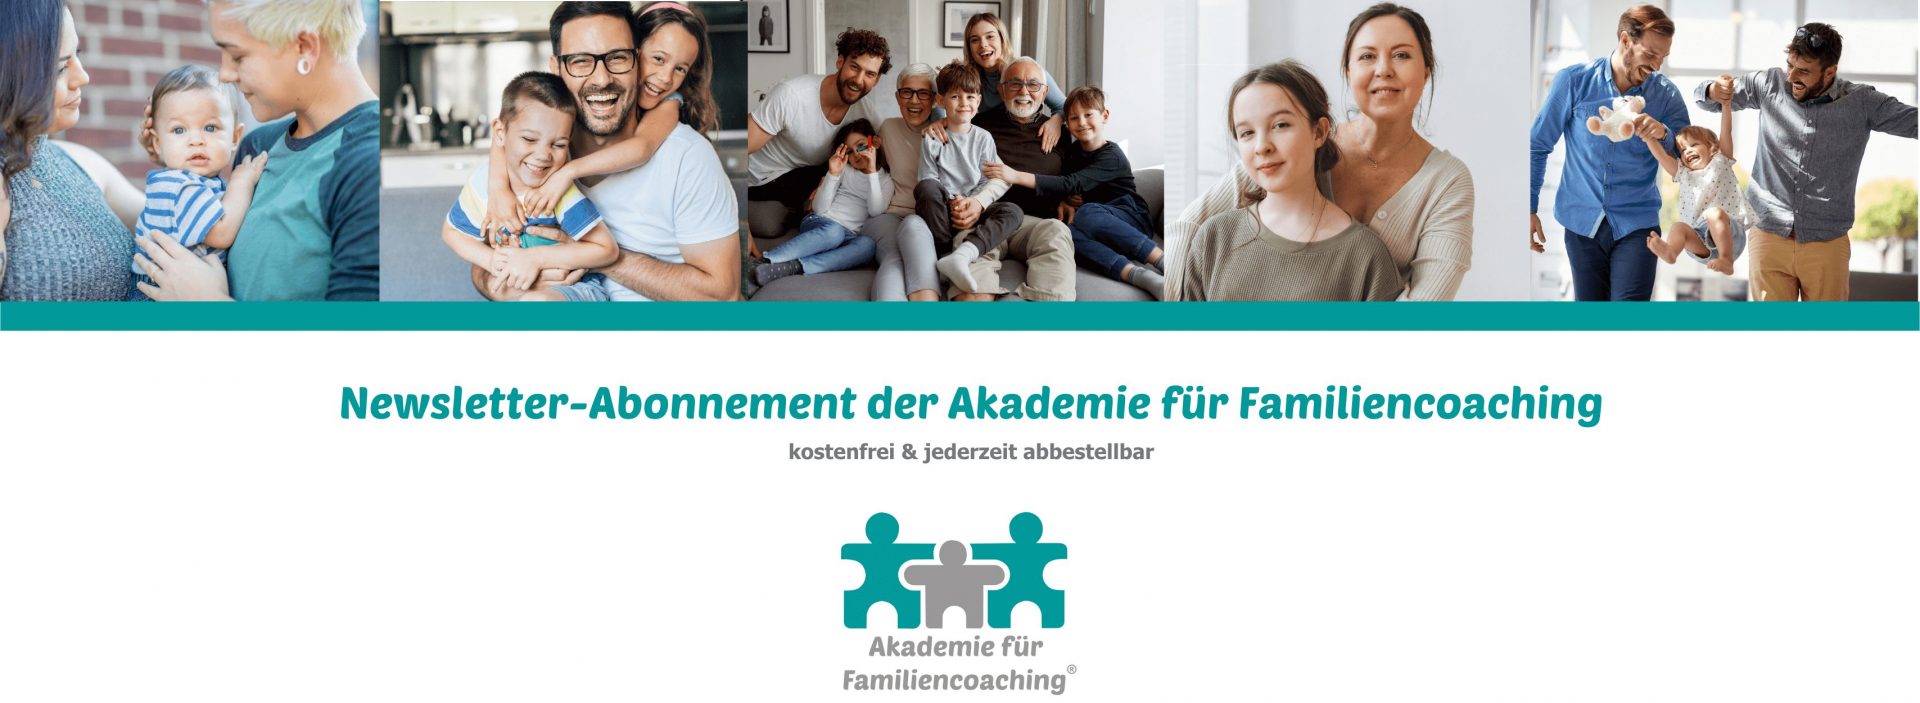 Header Kira Liebmann - Akademie für Familiencoaching